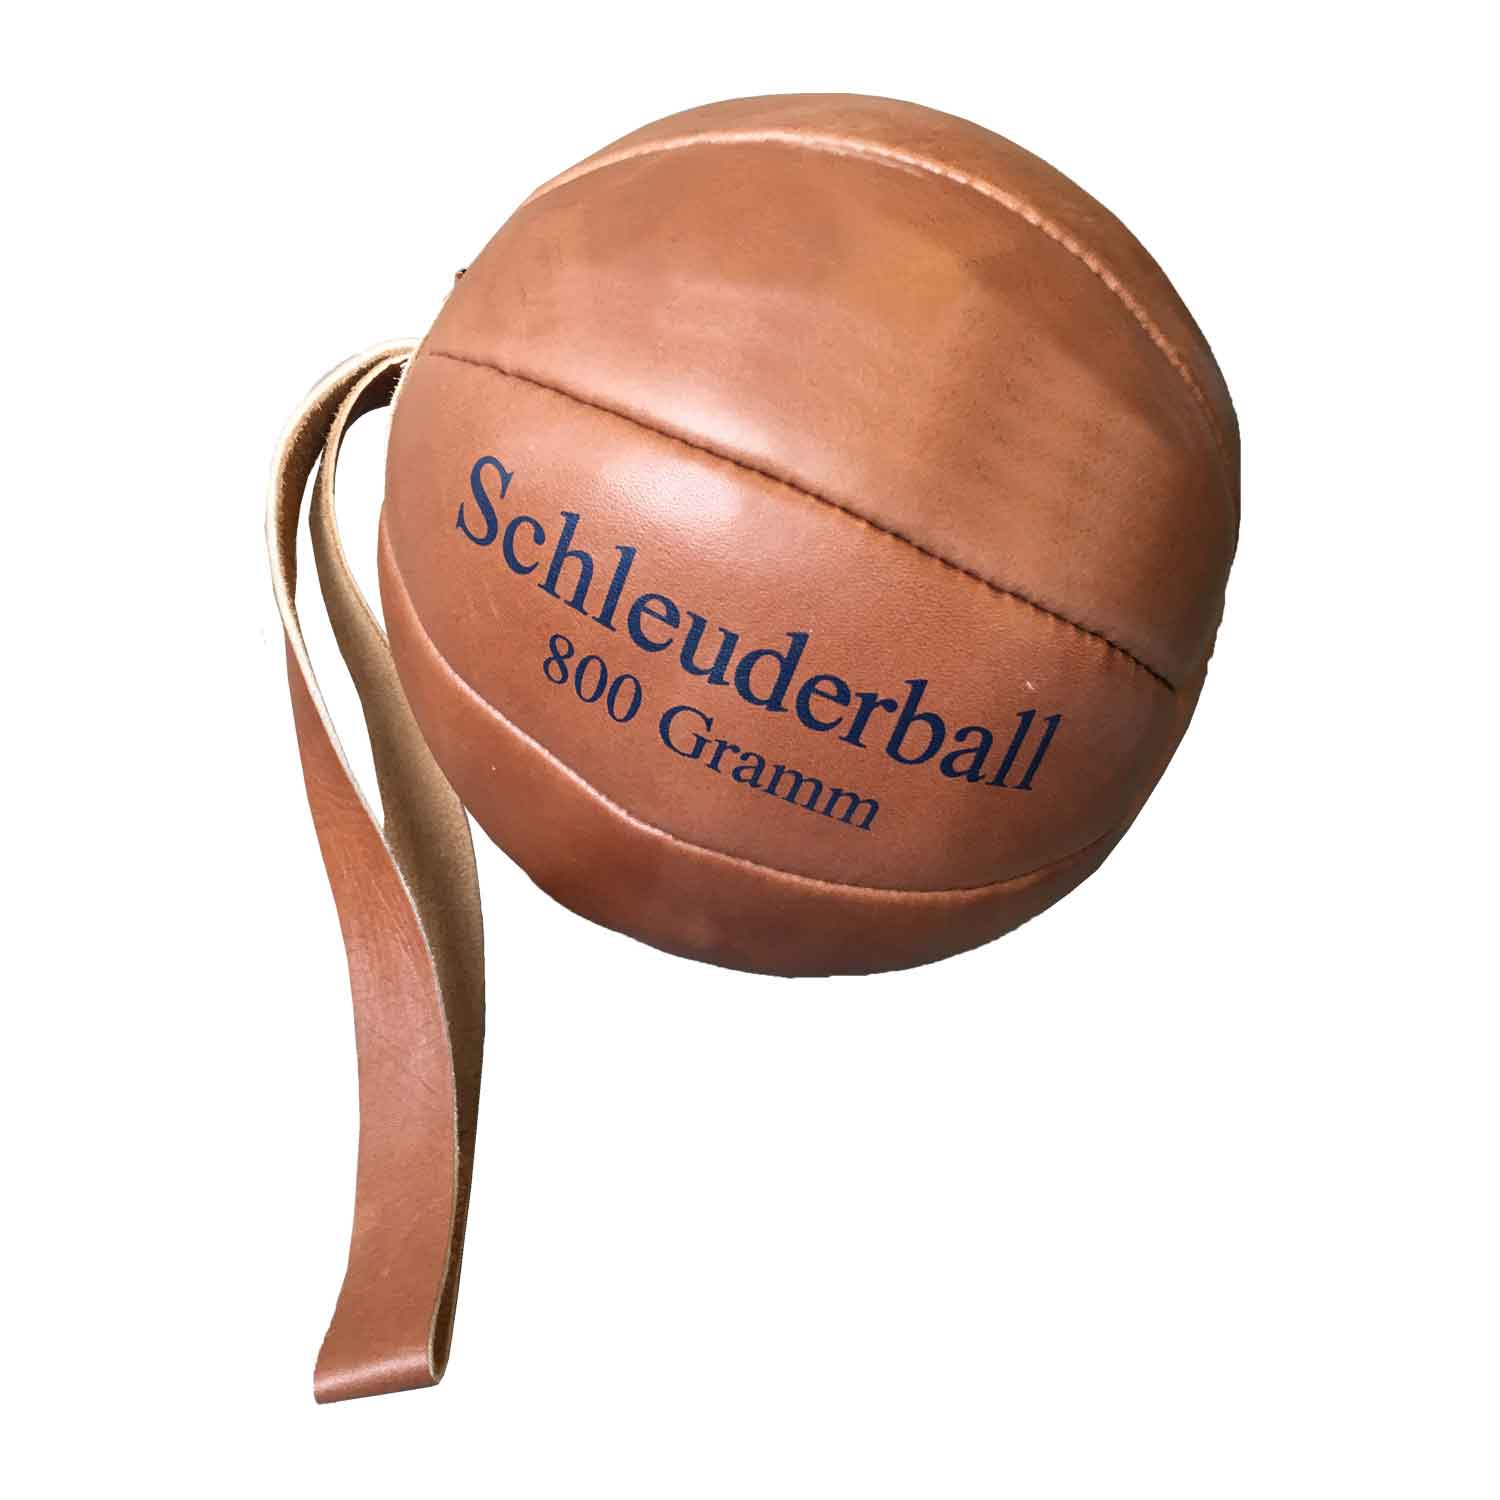 Schleuderball 